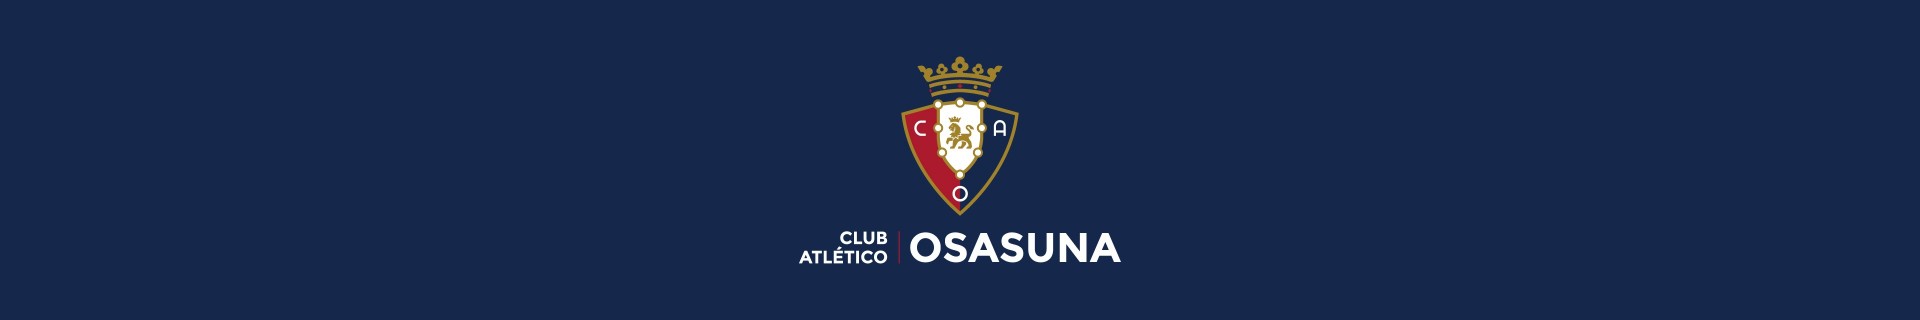 Calcetines Oficiales del C.A. Osasuna